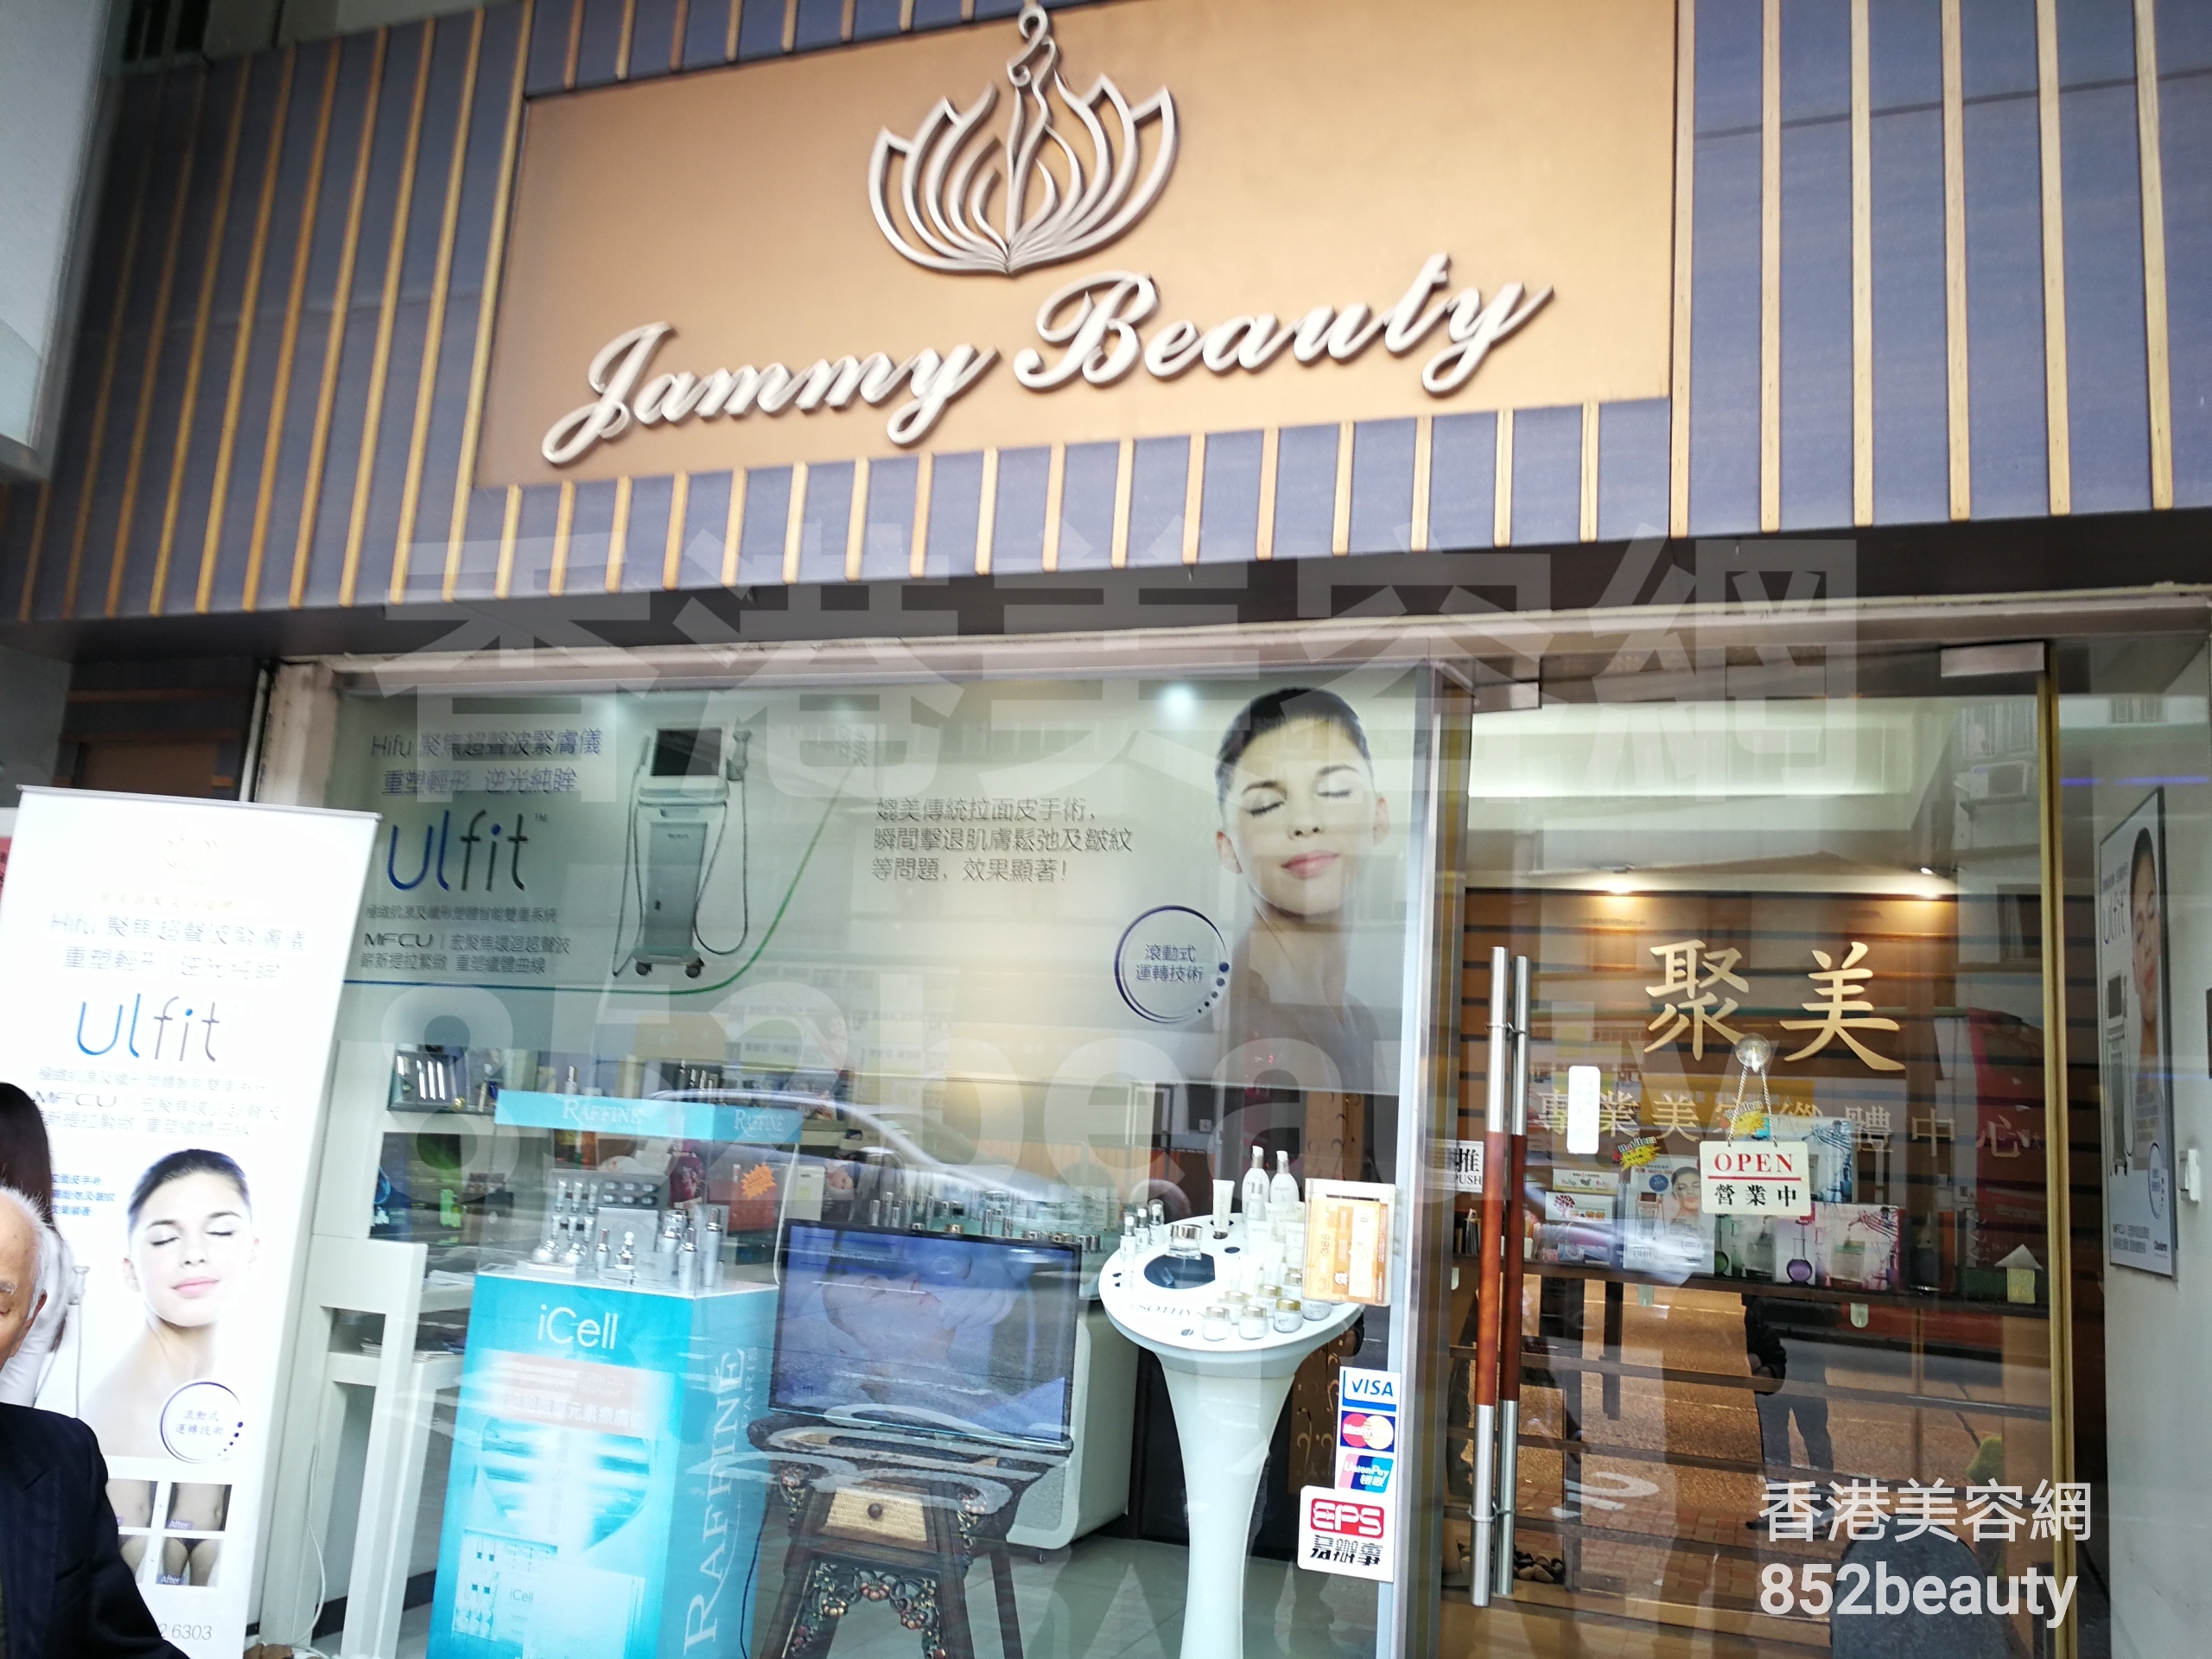 Massage/SPA: Jammy beauty house 聚美專業美容纖體中心